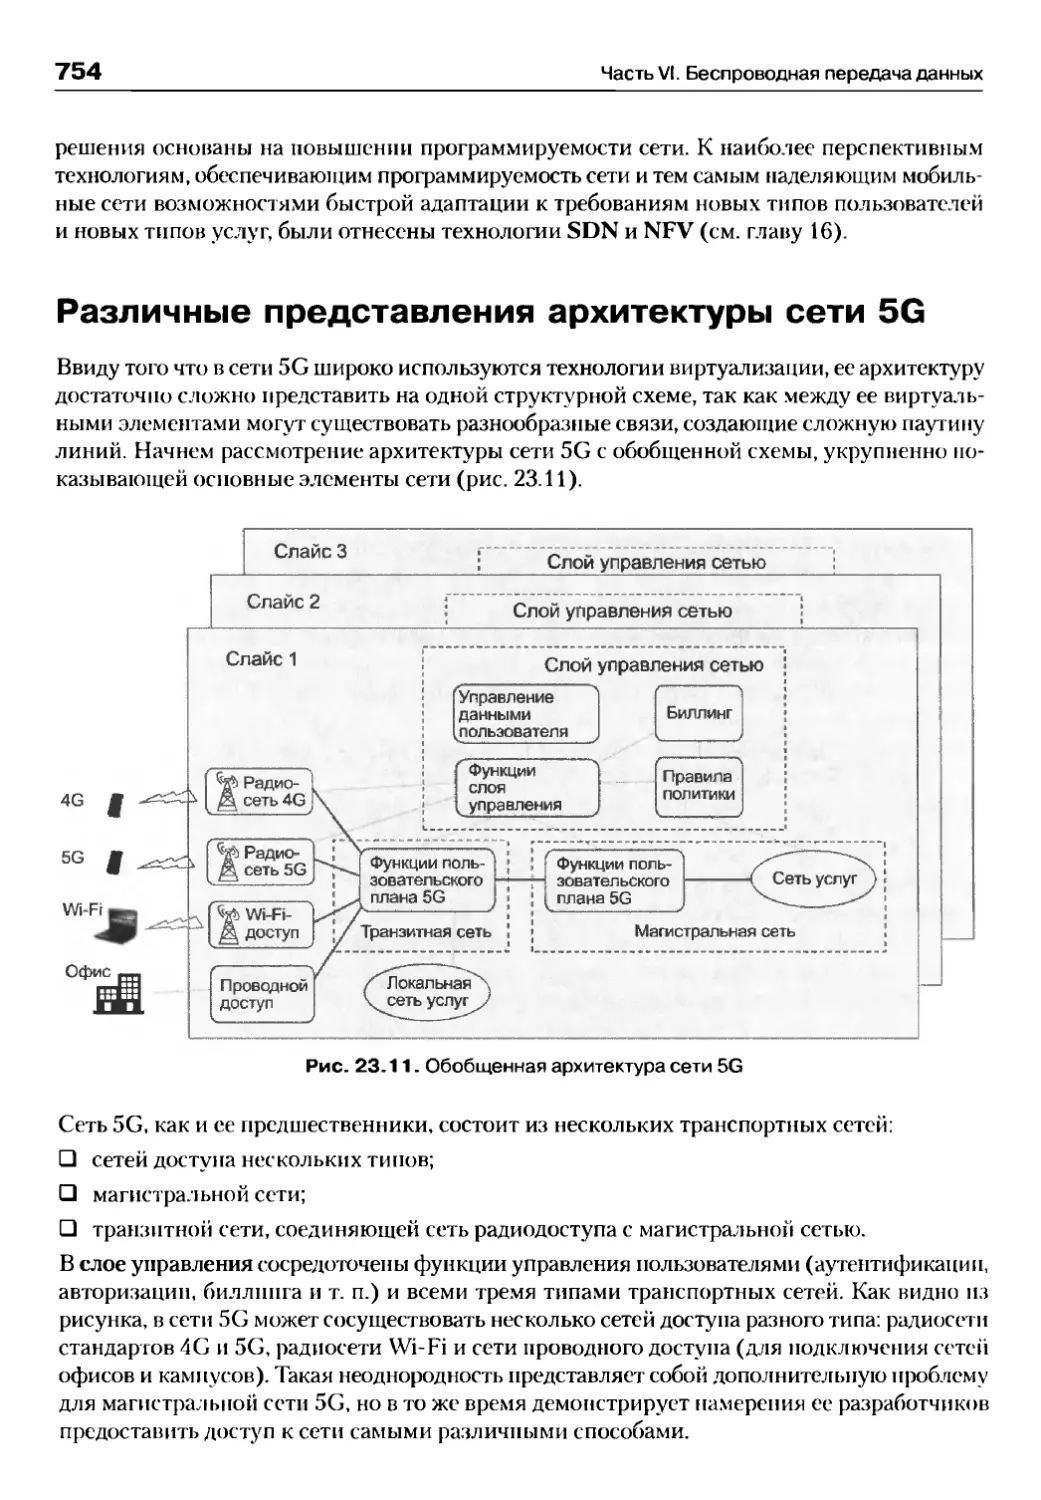 Различные представления архитектуры сети 5G